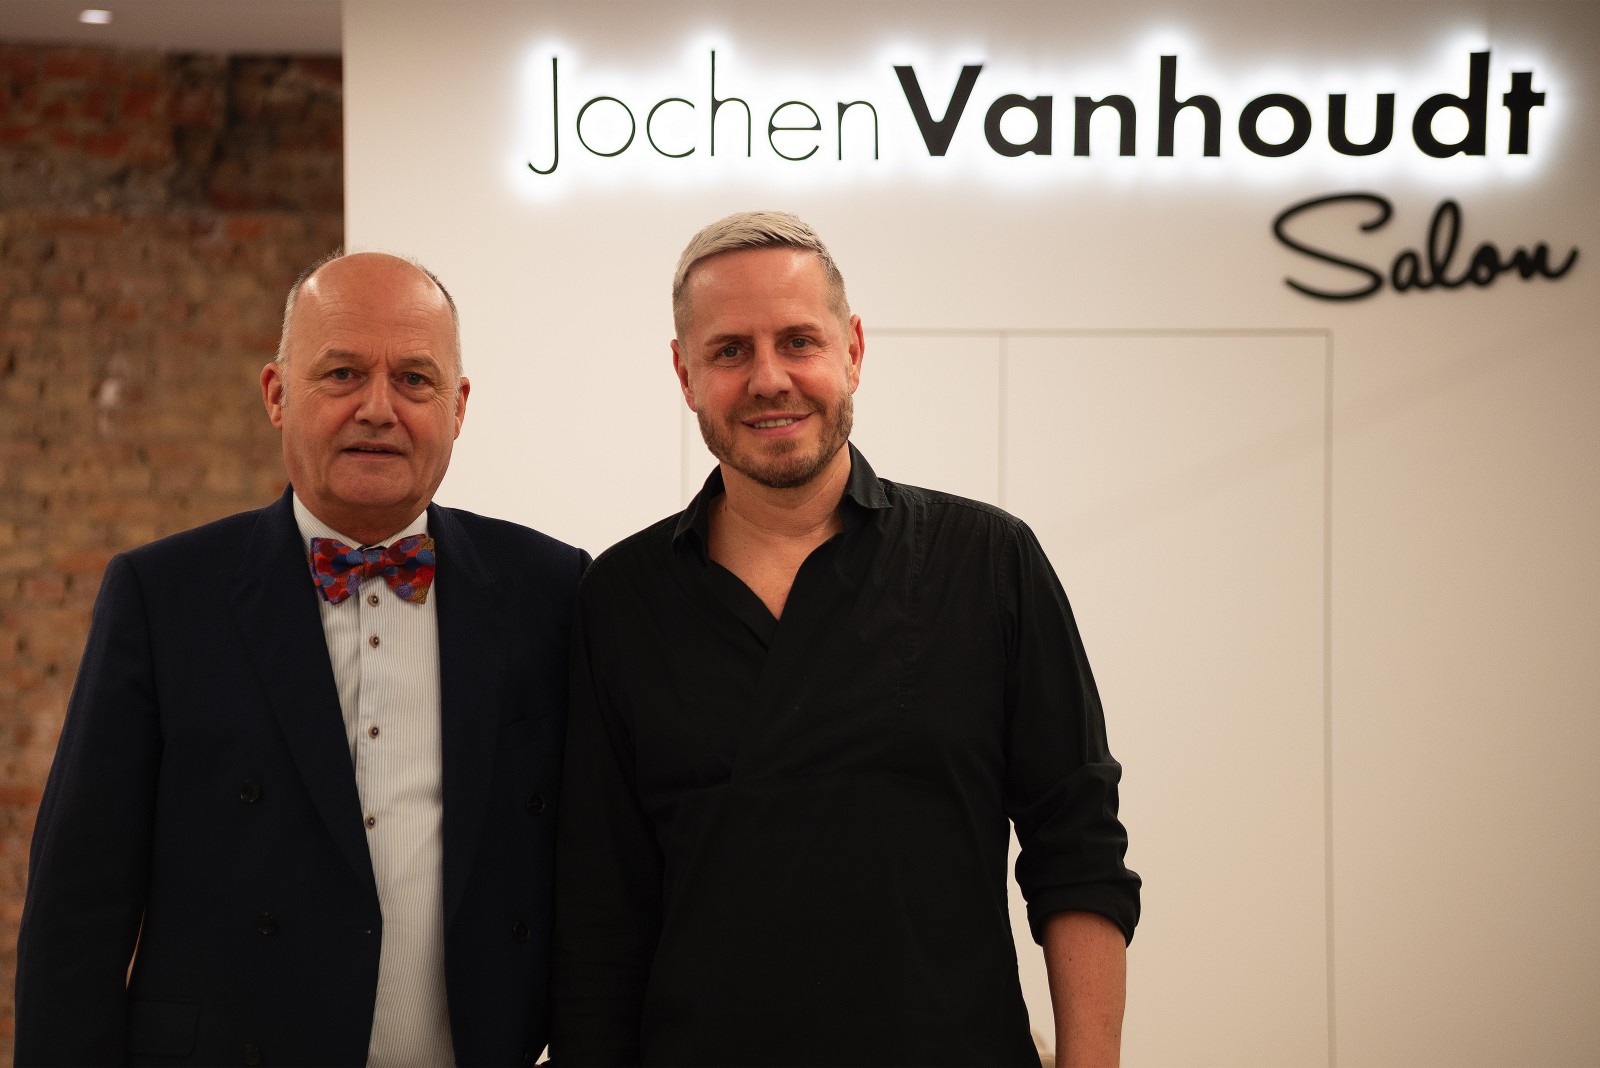 Le coiffeur des célébrités flamandes jochen vanhoudt ouvre un nouvel établissement sur l’operaplein d’anvers